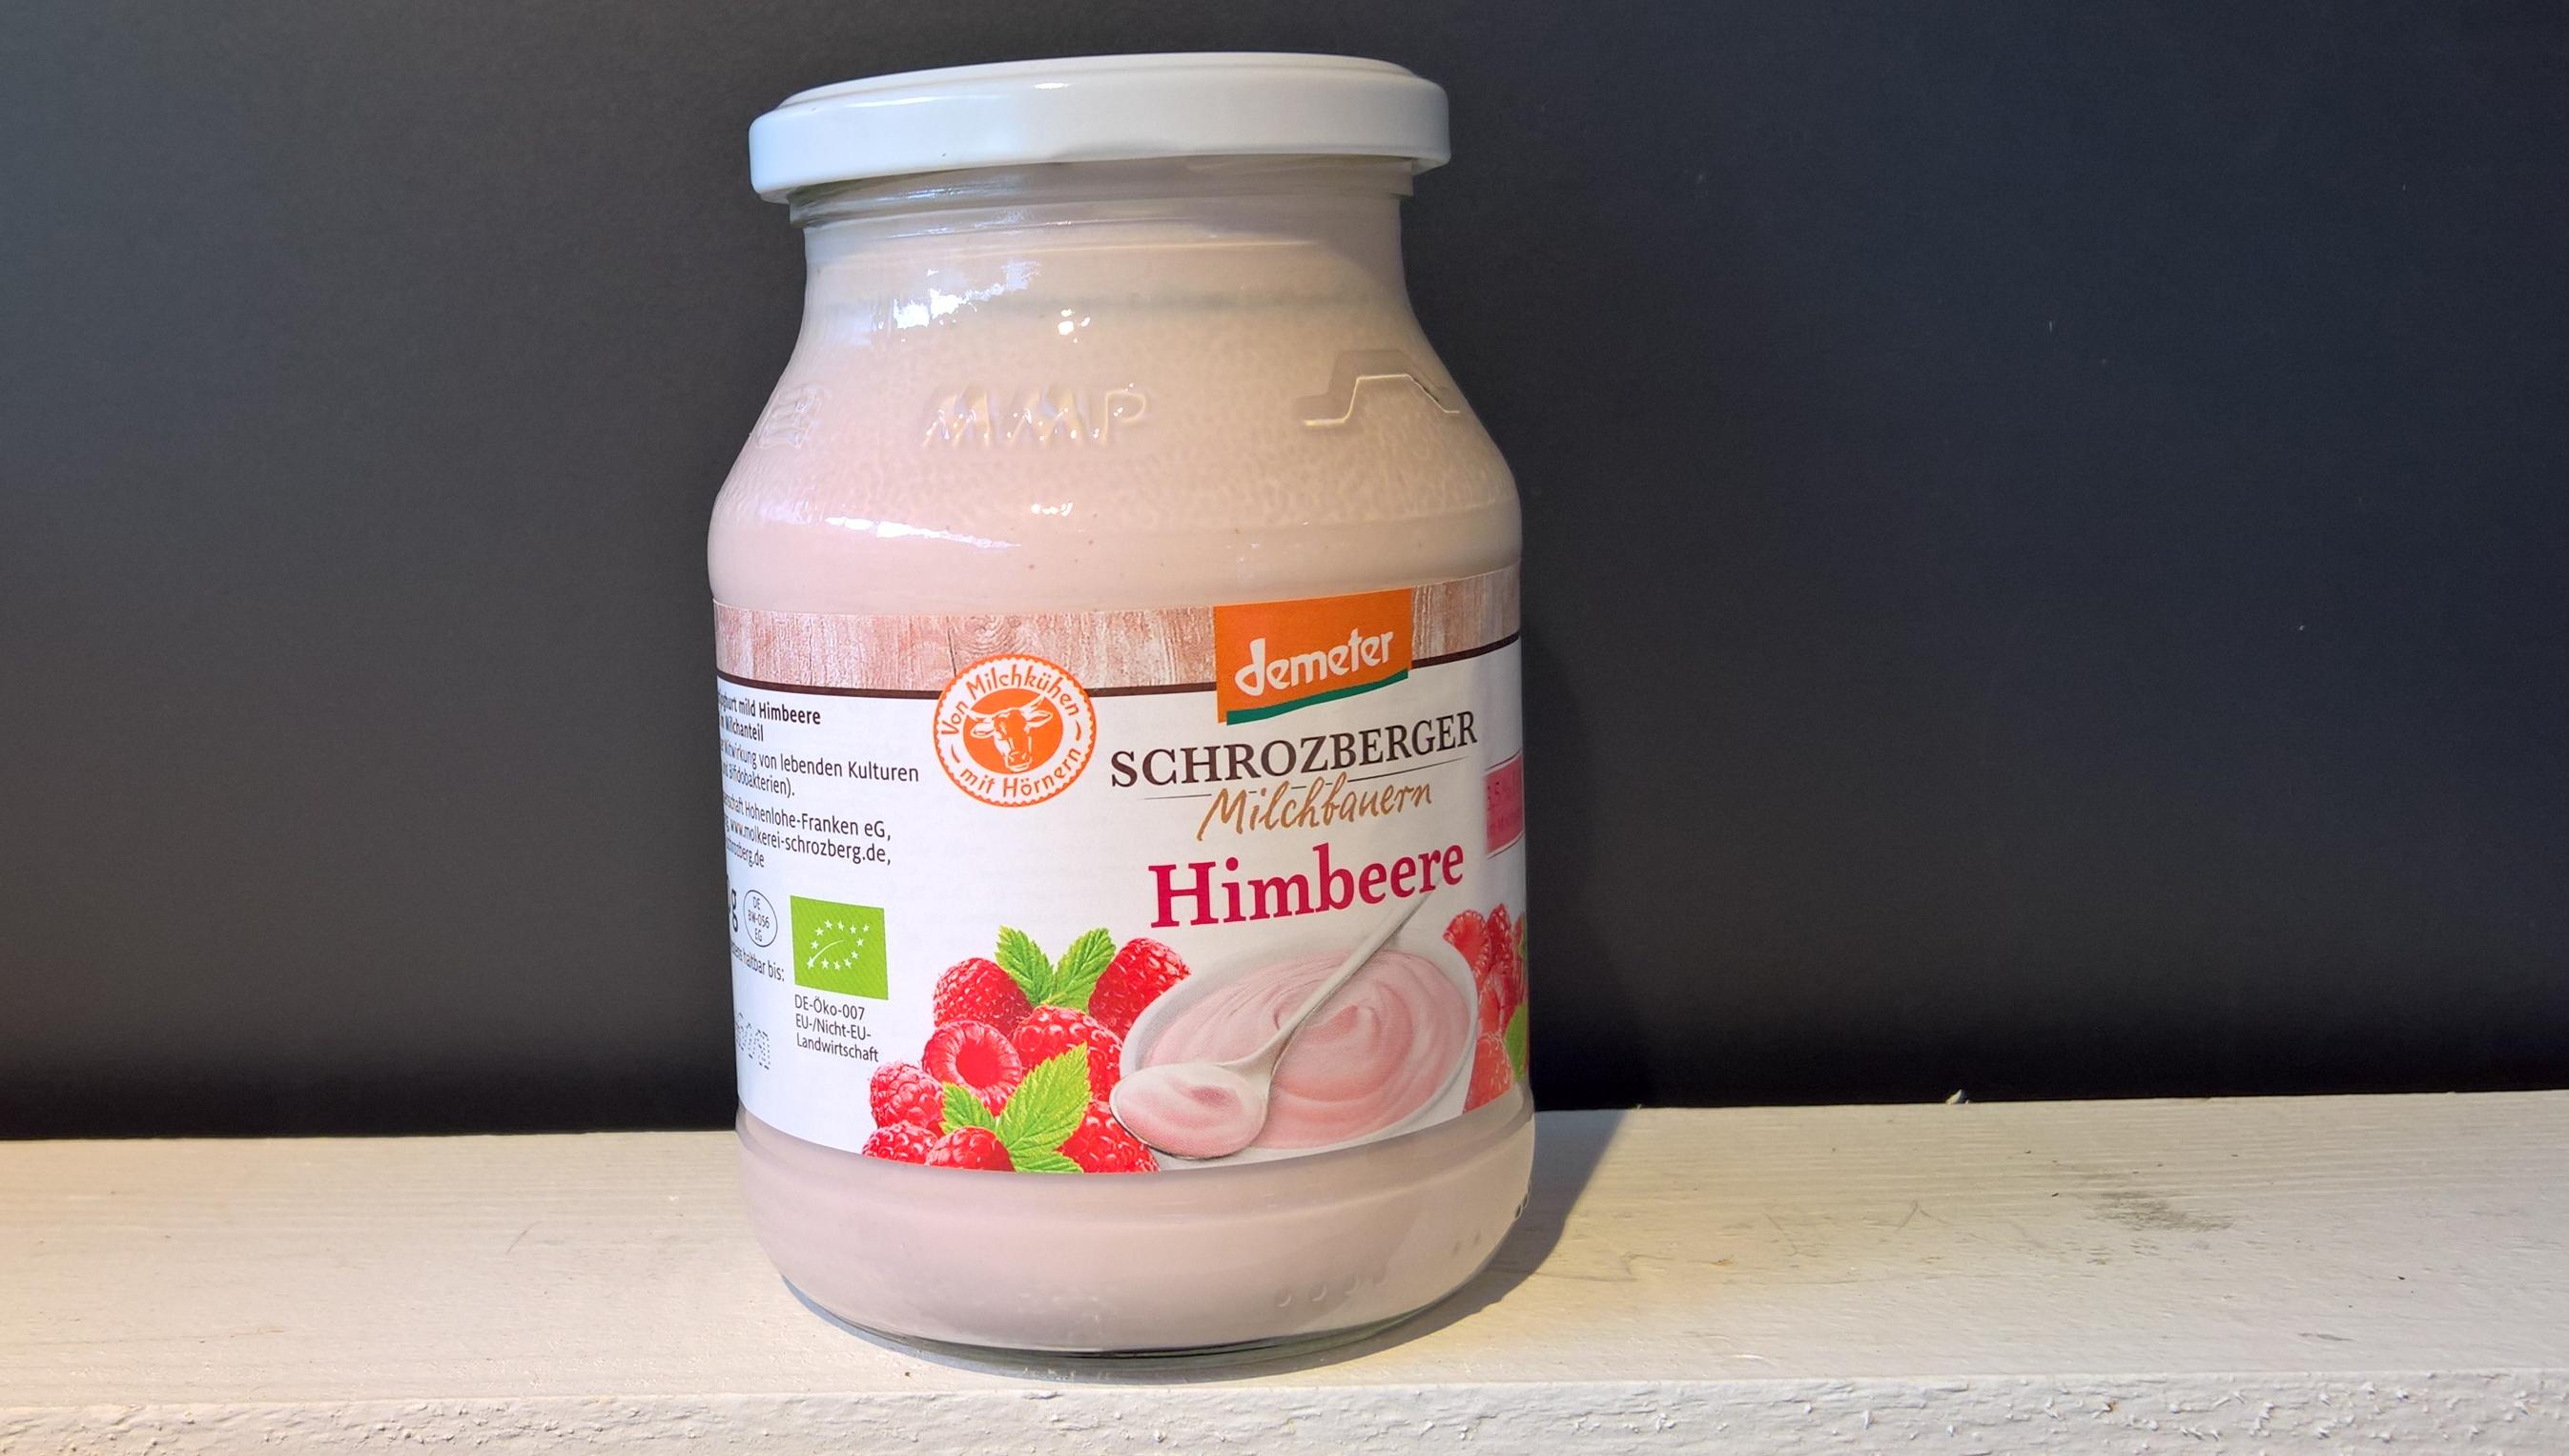 Joghurt Himbeer Schrozberger 500g